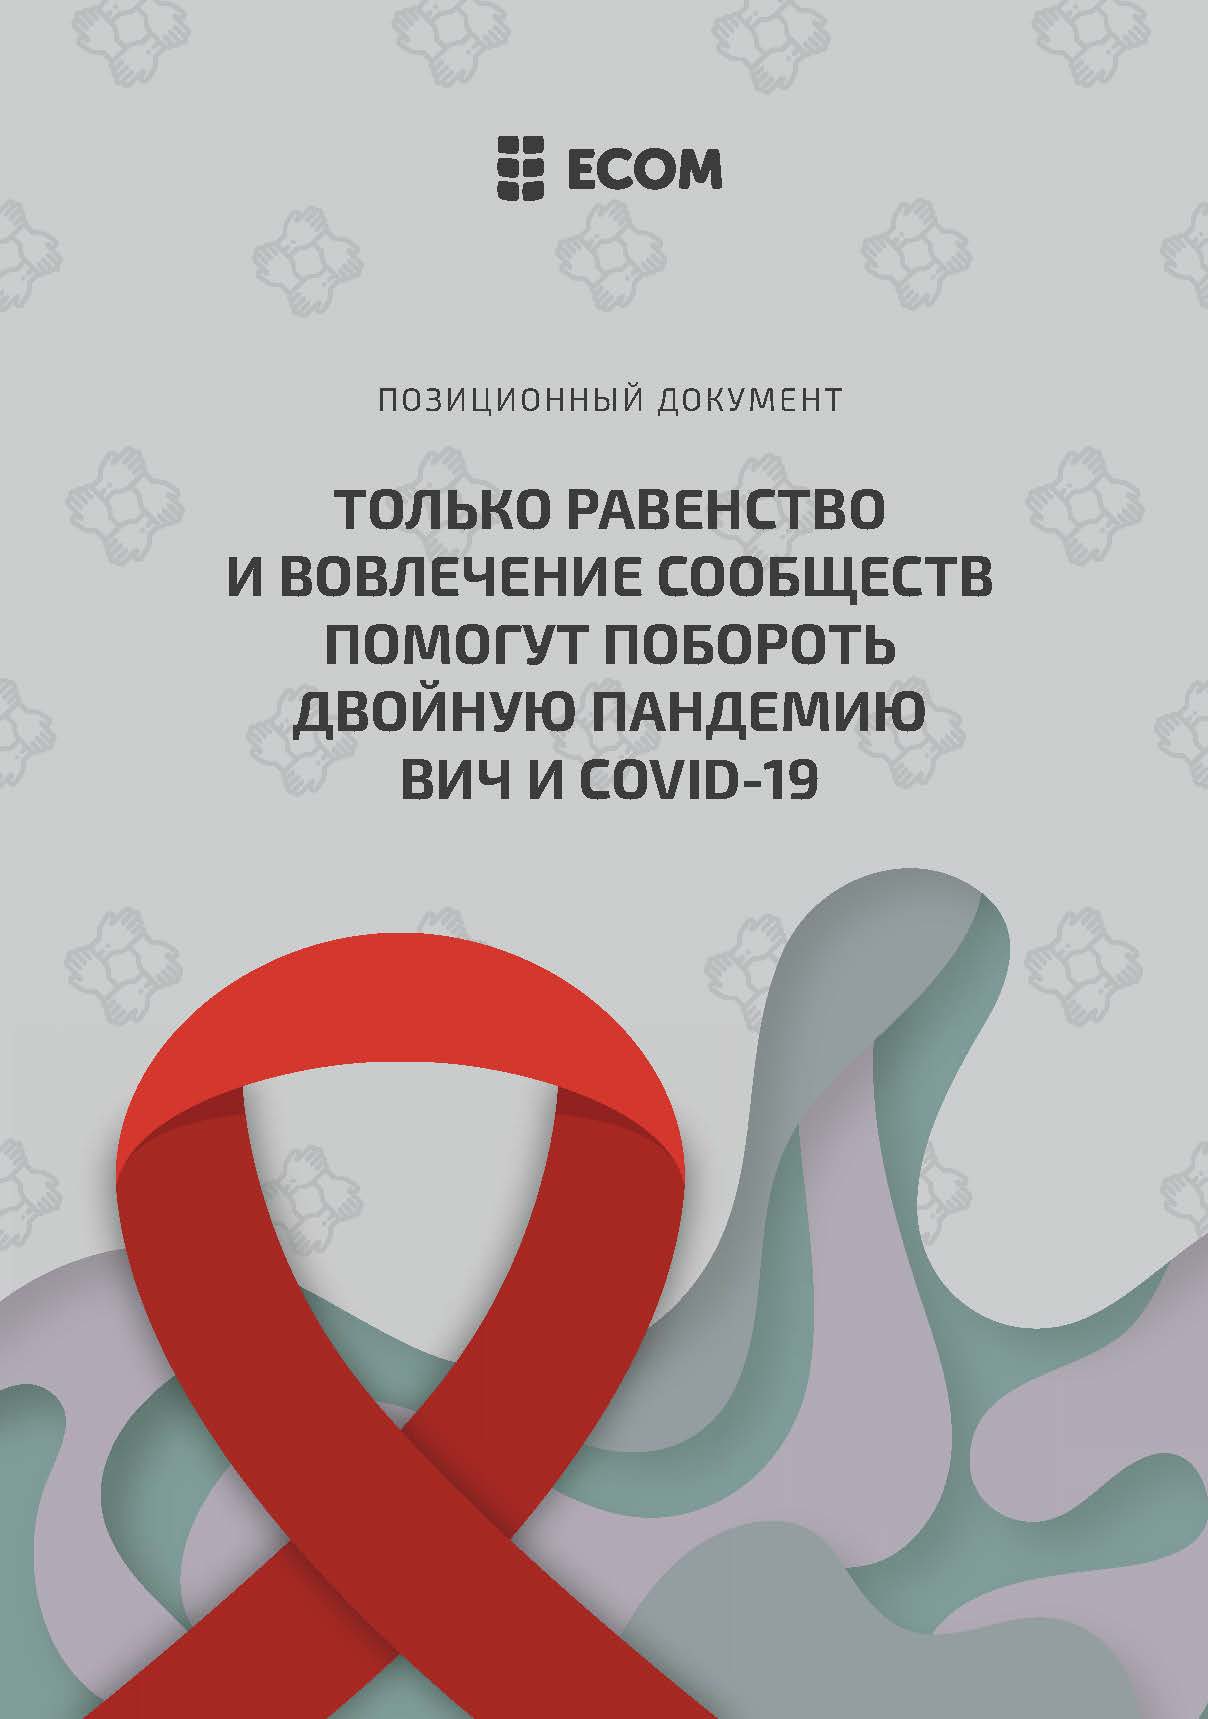 Позиционный документ: Только равенство и вовлечение сообществ помогут побороть двойную пандемию ВИЧ и COVID-19